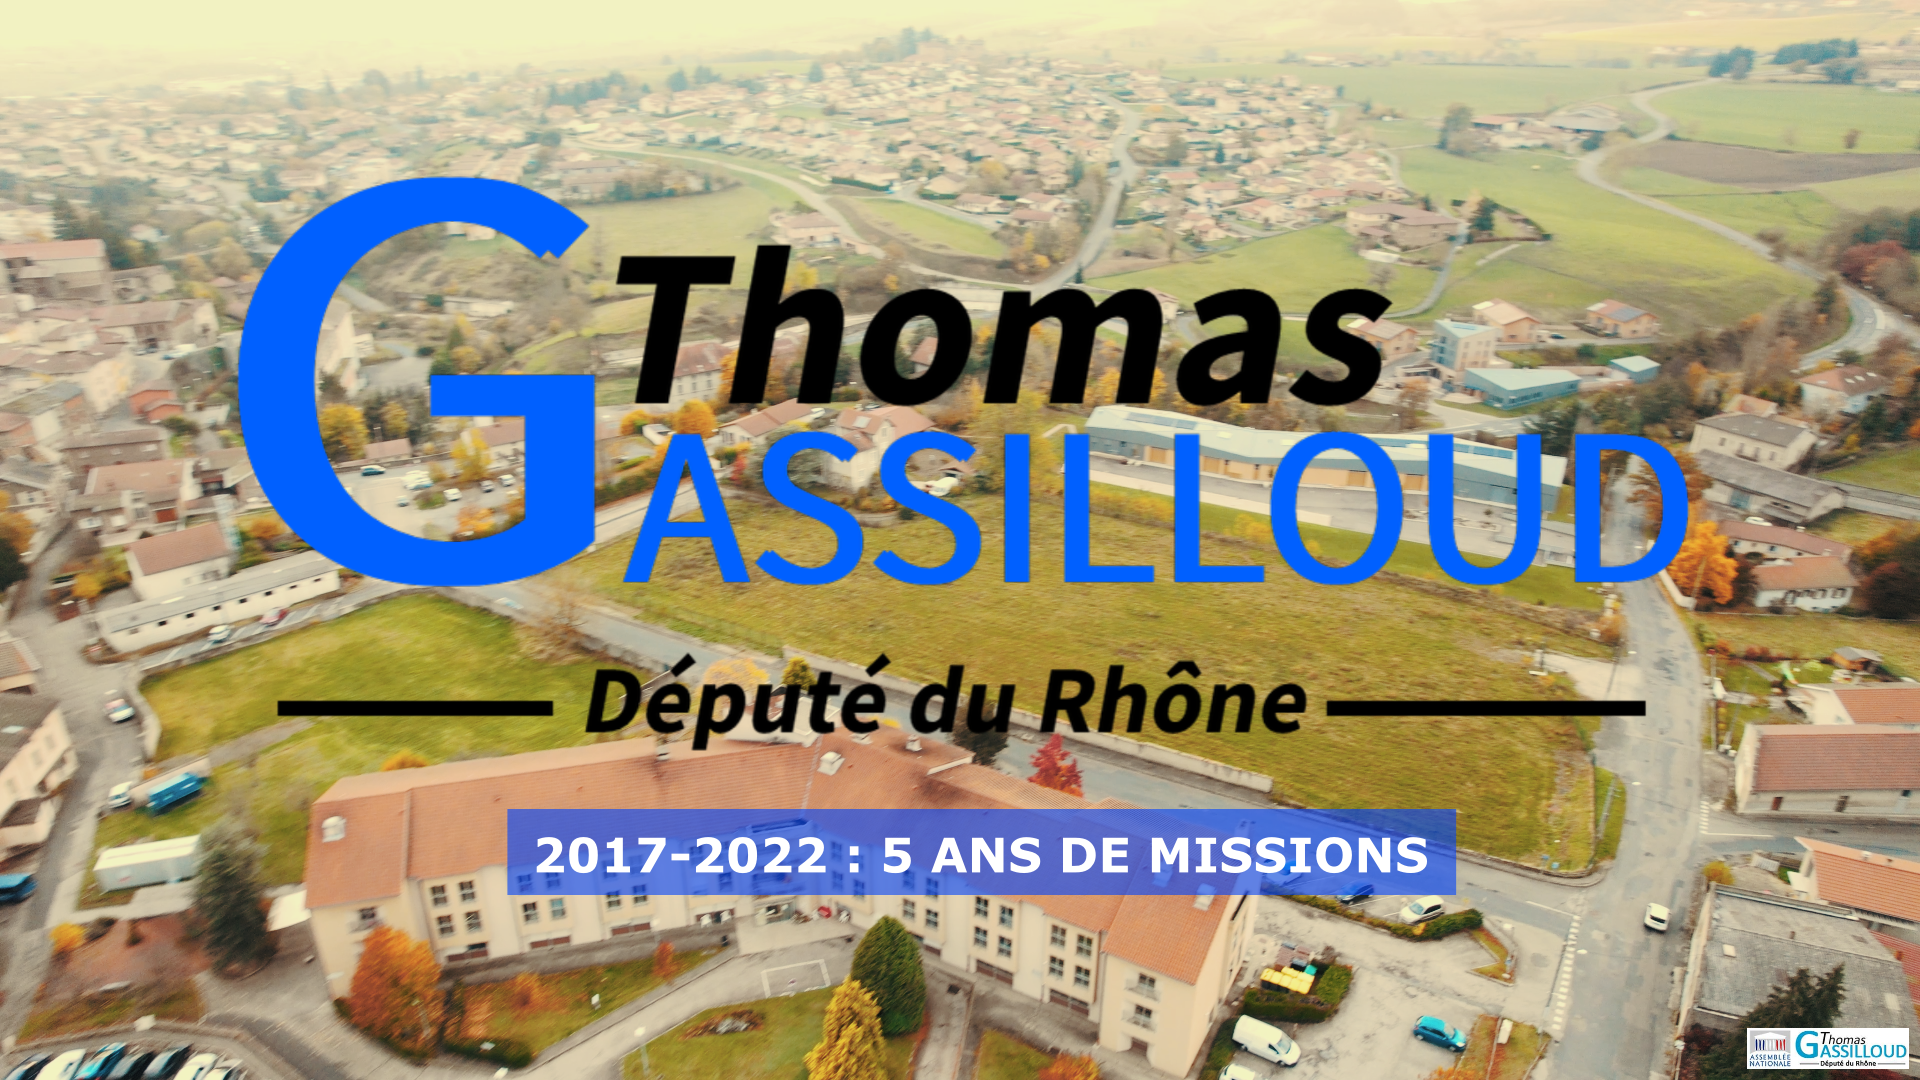 2017 – 2022 : cinq ans de missions pour Thomas Gassilloud